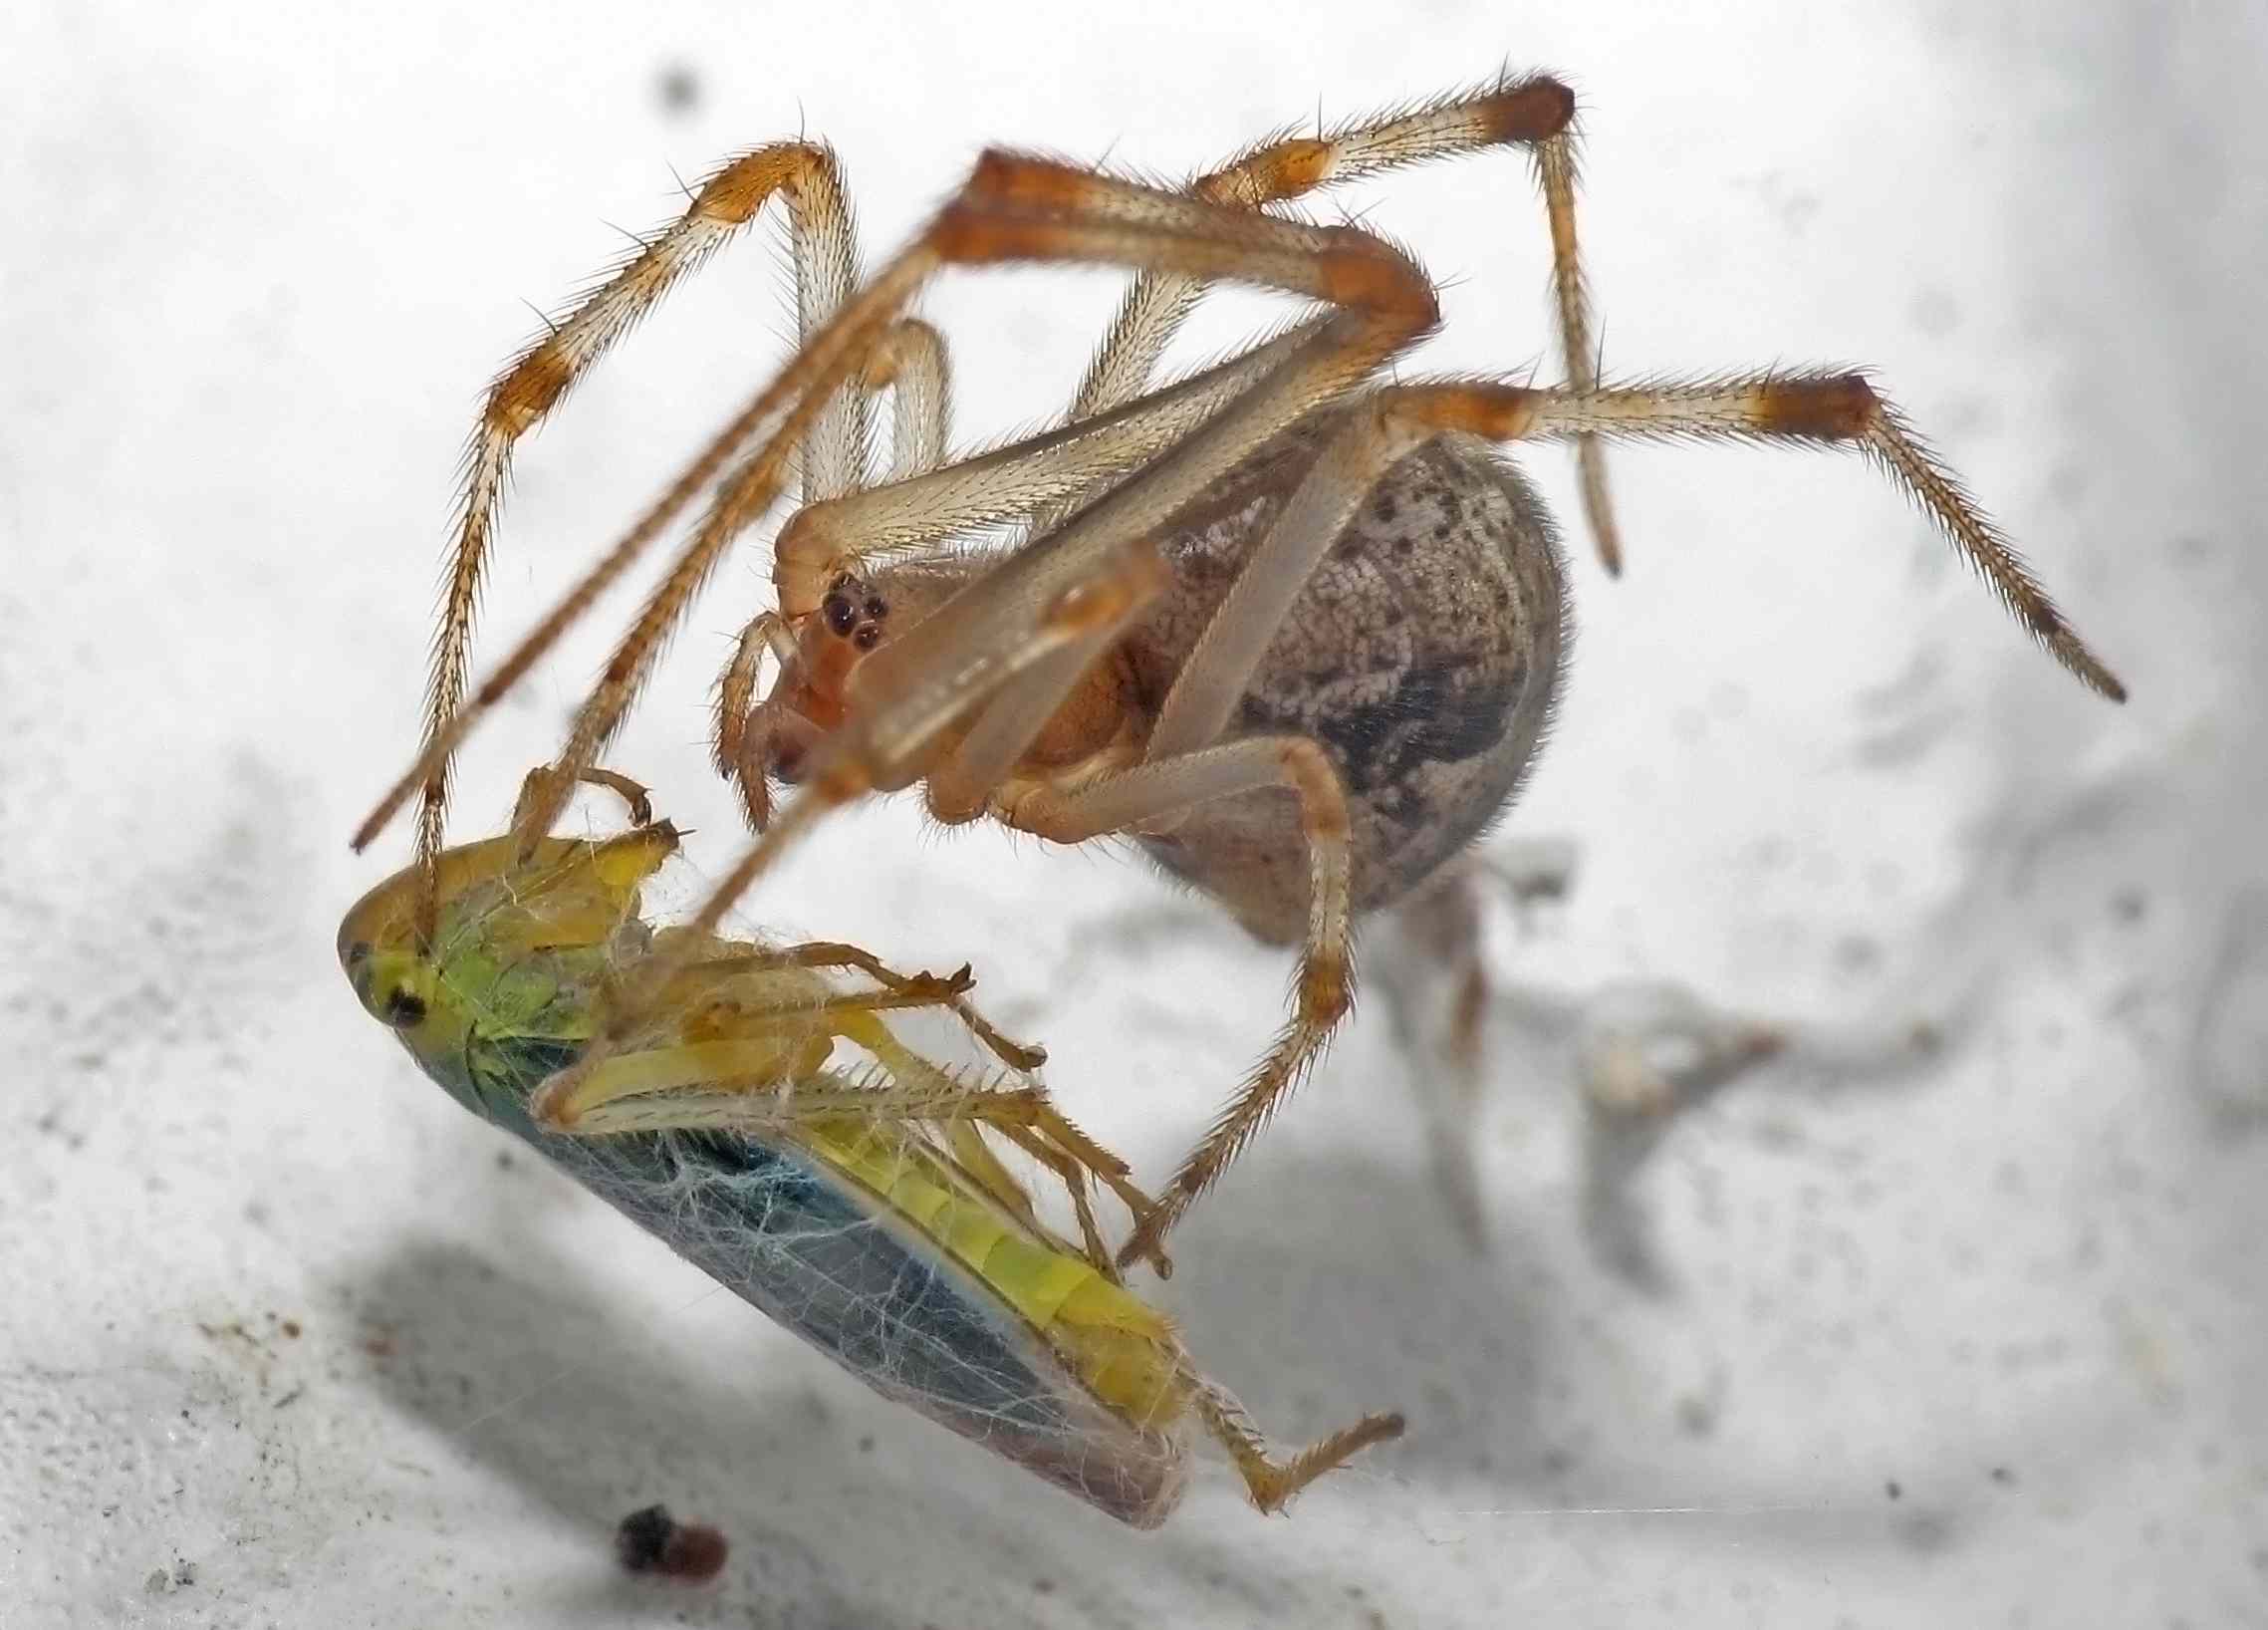 Parasteatoda tepidariorum o araña doméstica americana tiene un insecto para cenar